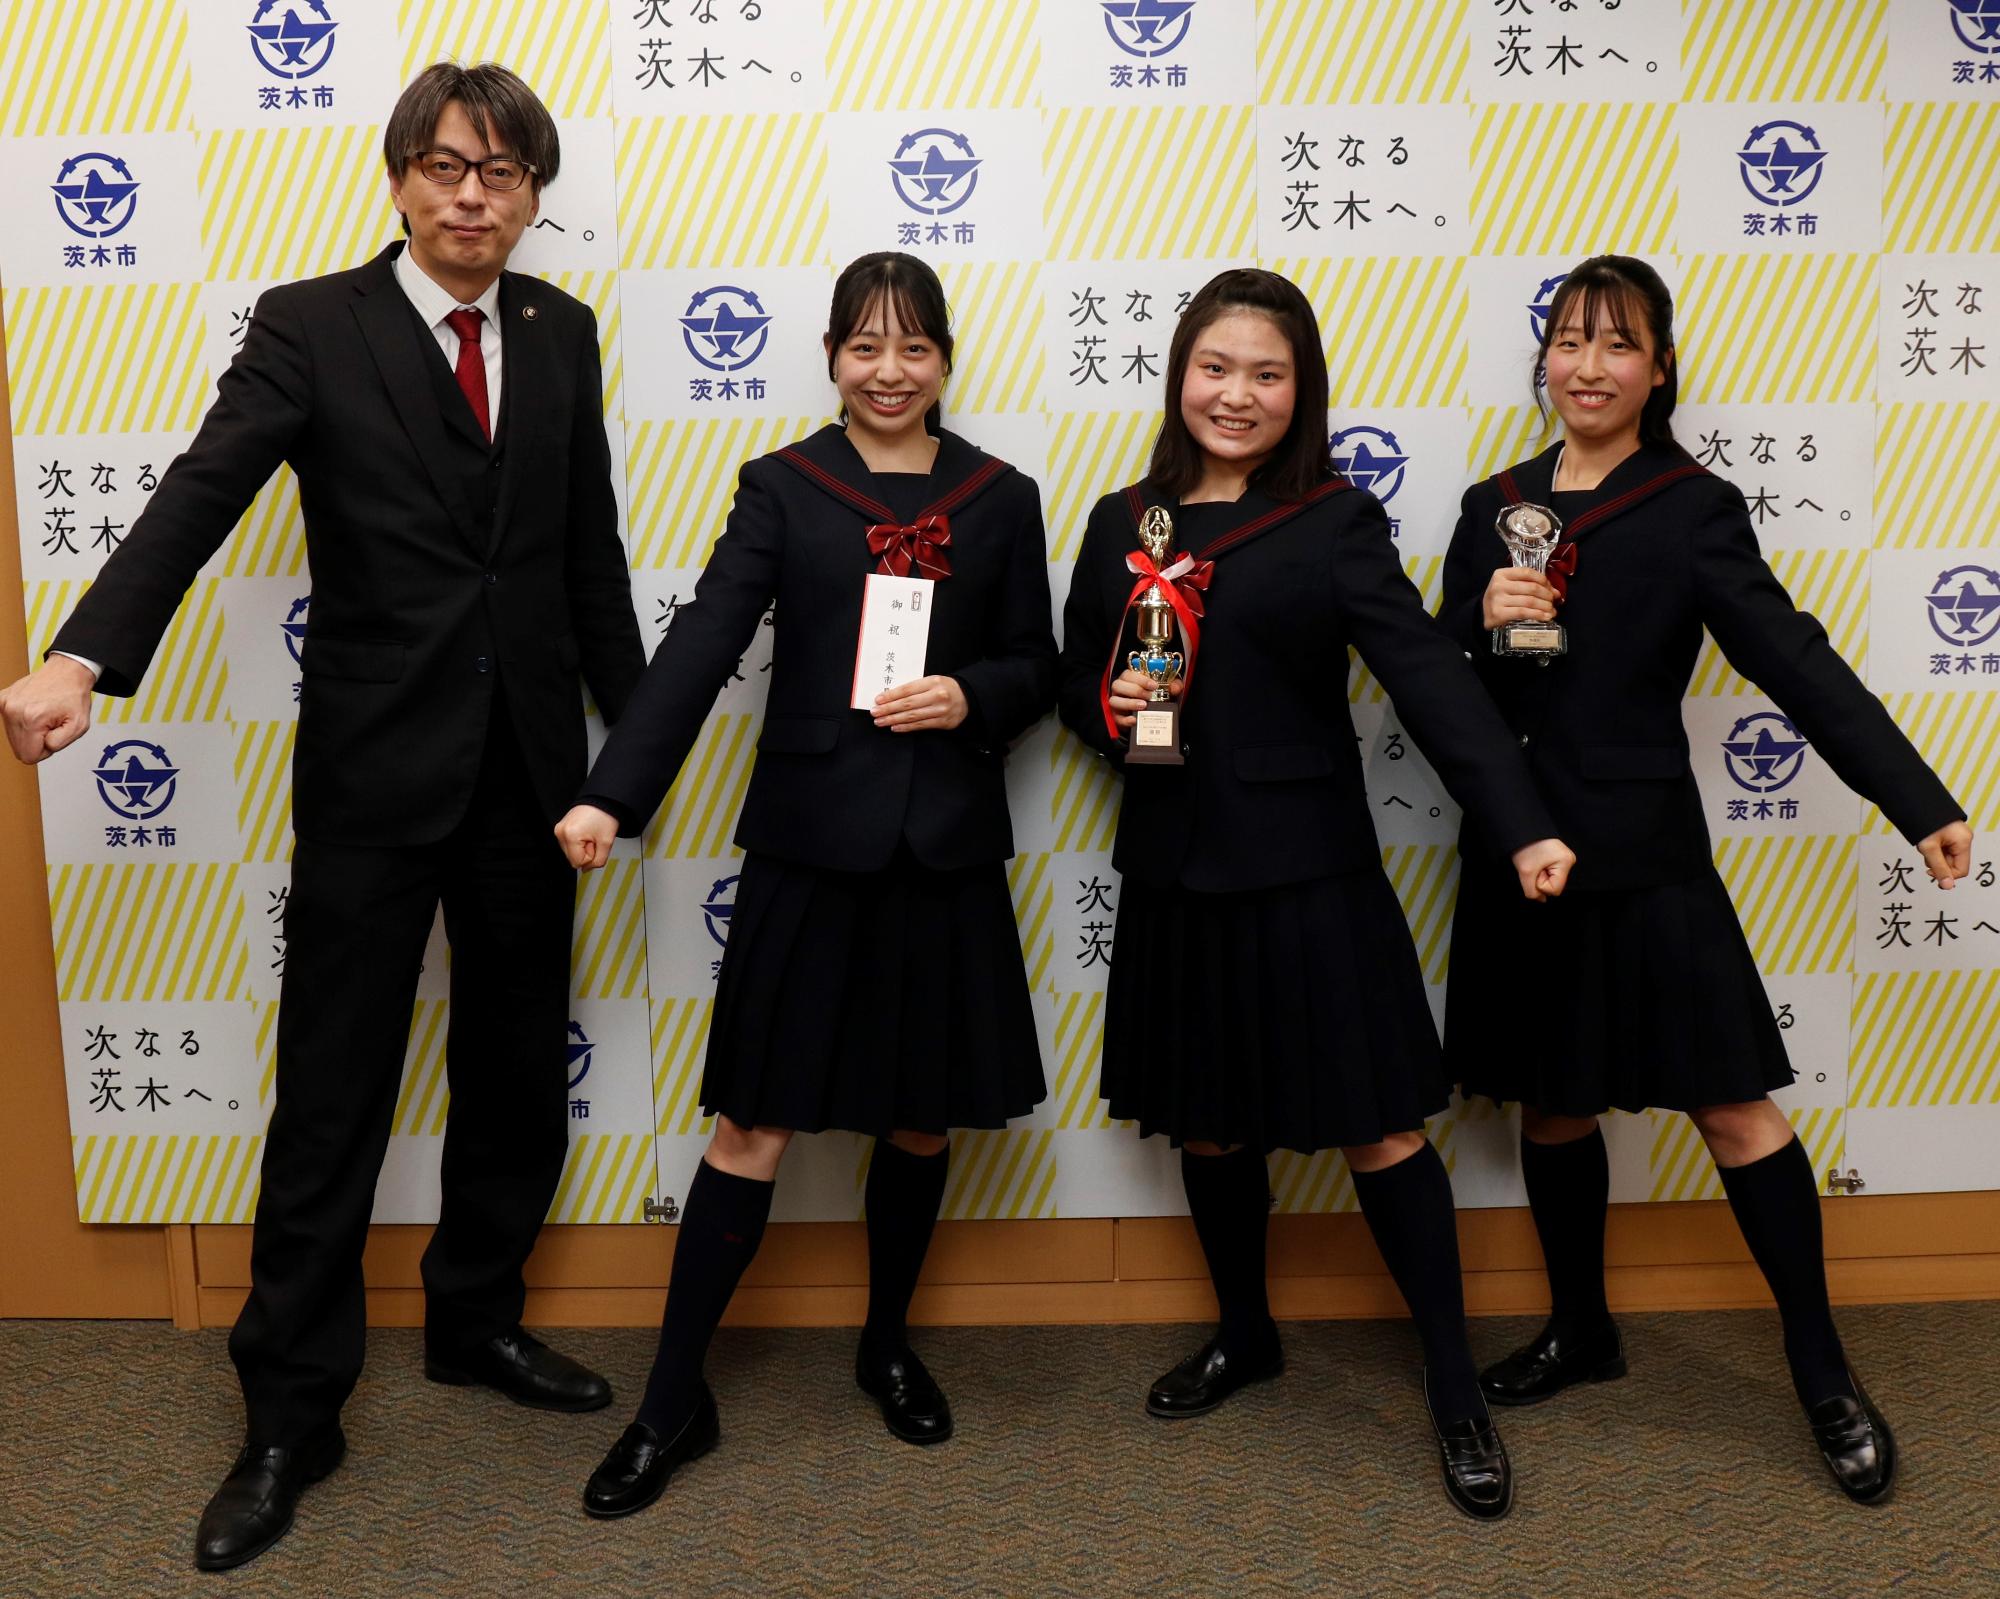 早稲田摂陵高校の生徒たちと一緒にチアダンスのポーズをする市長の写真